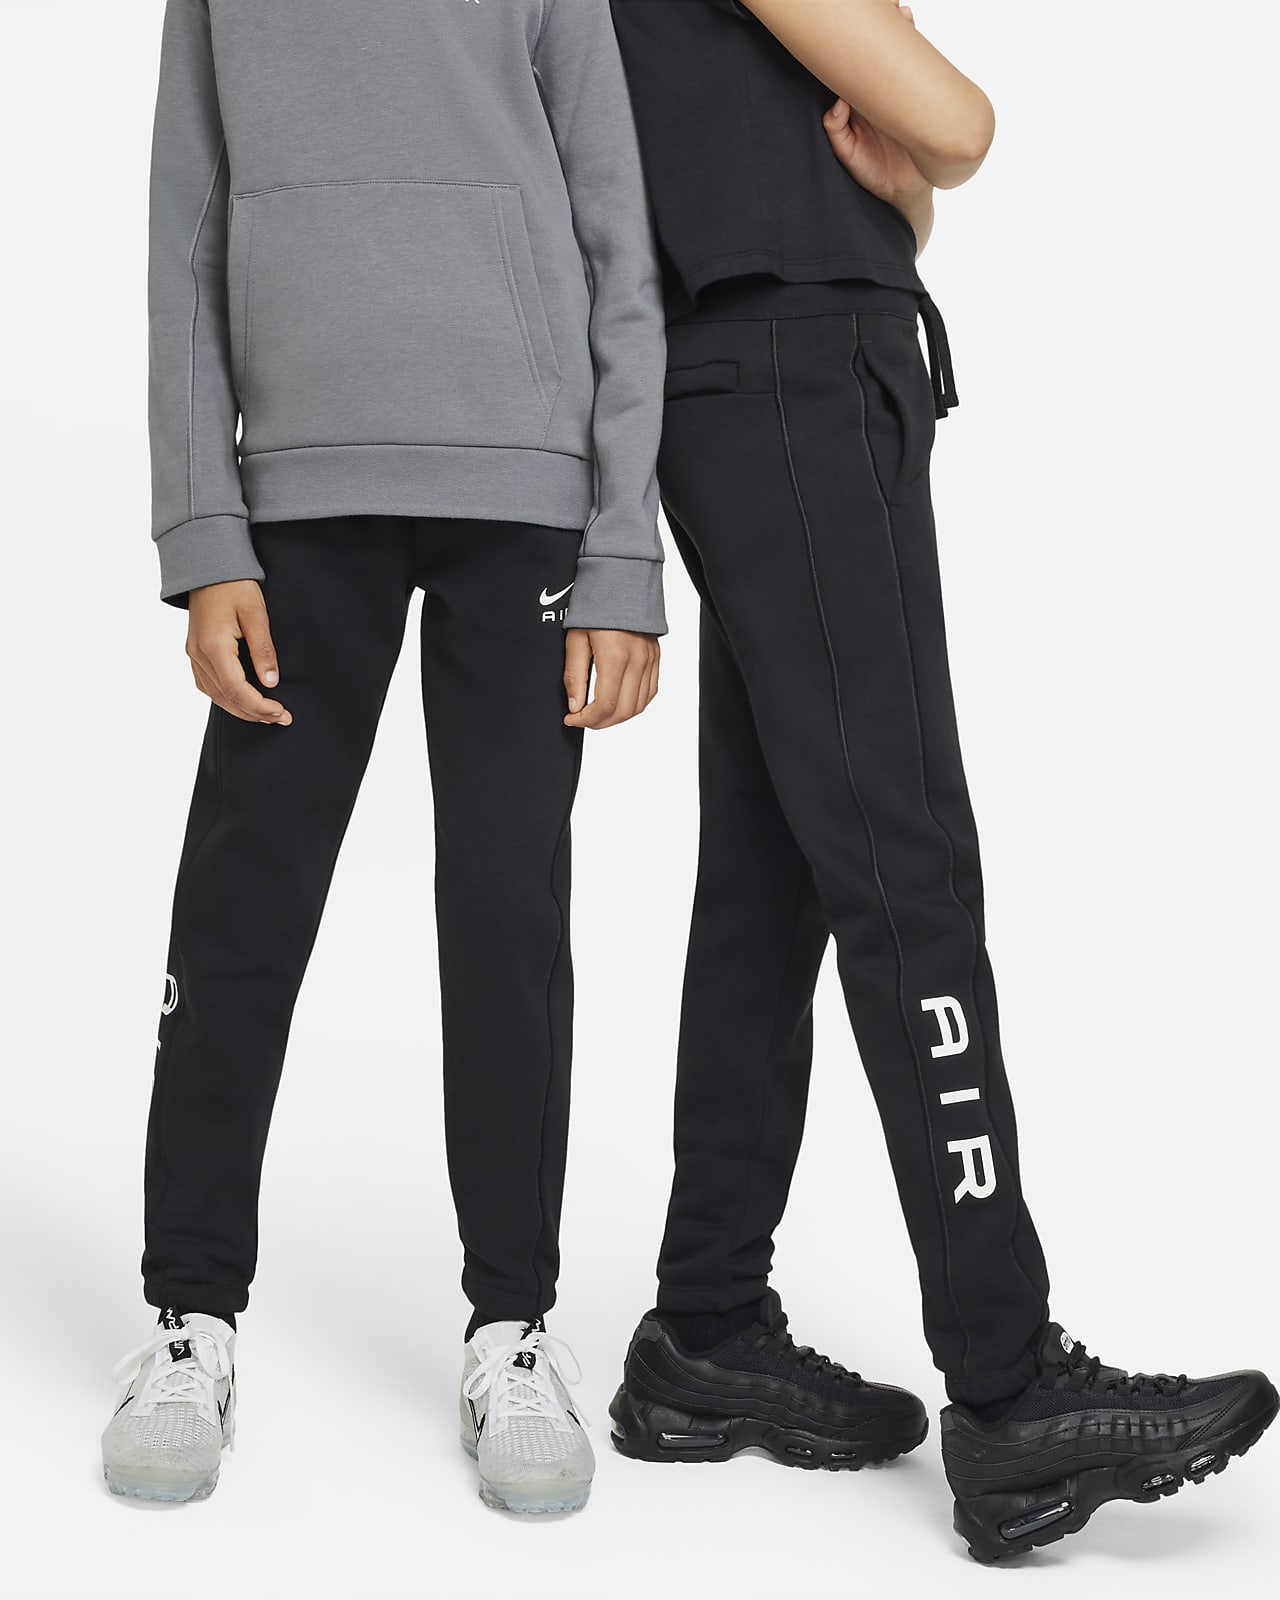 Nike Air Older Kids' Trousers